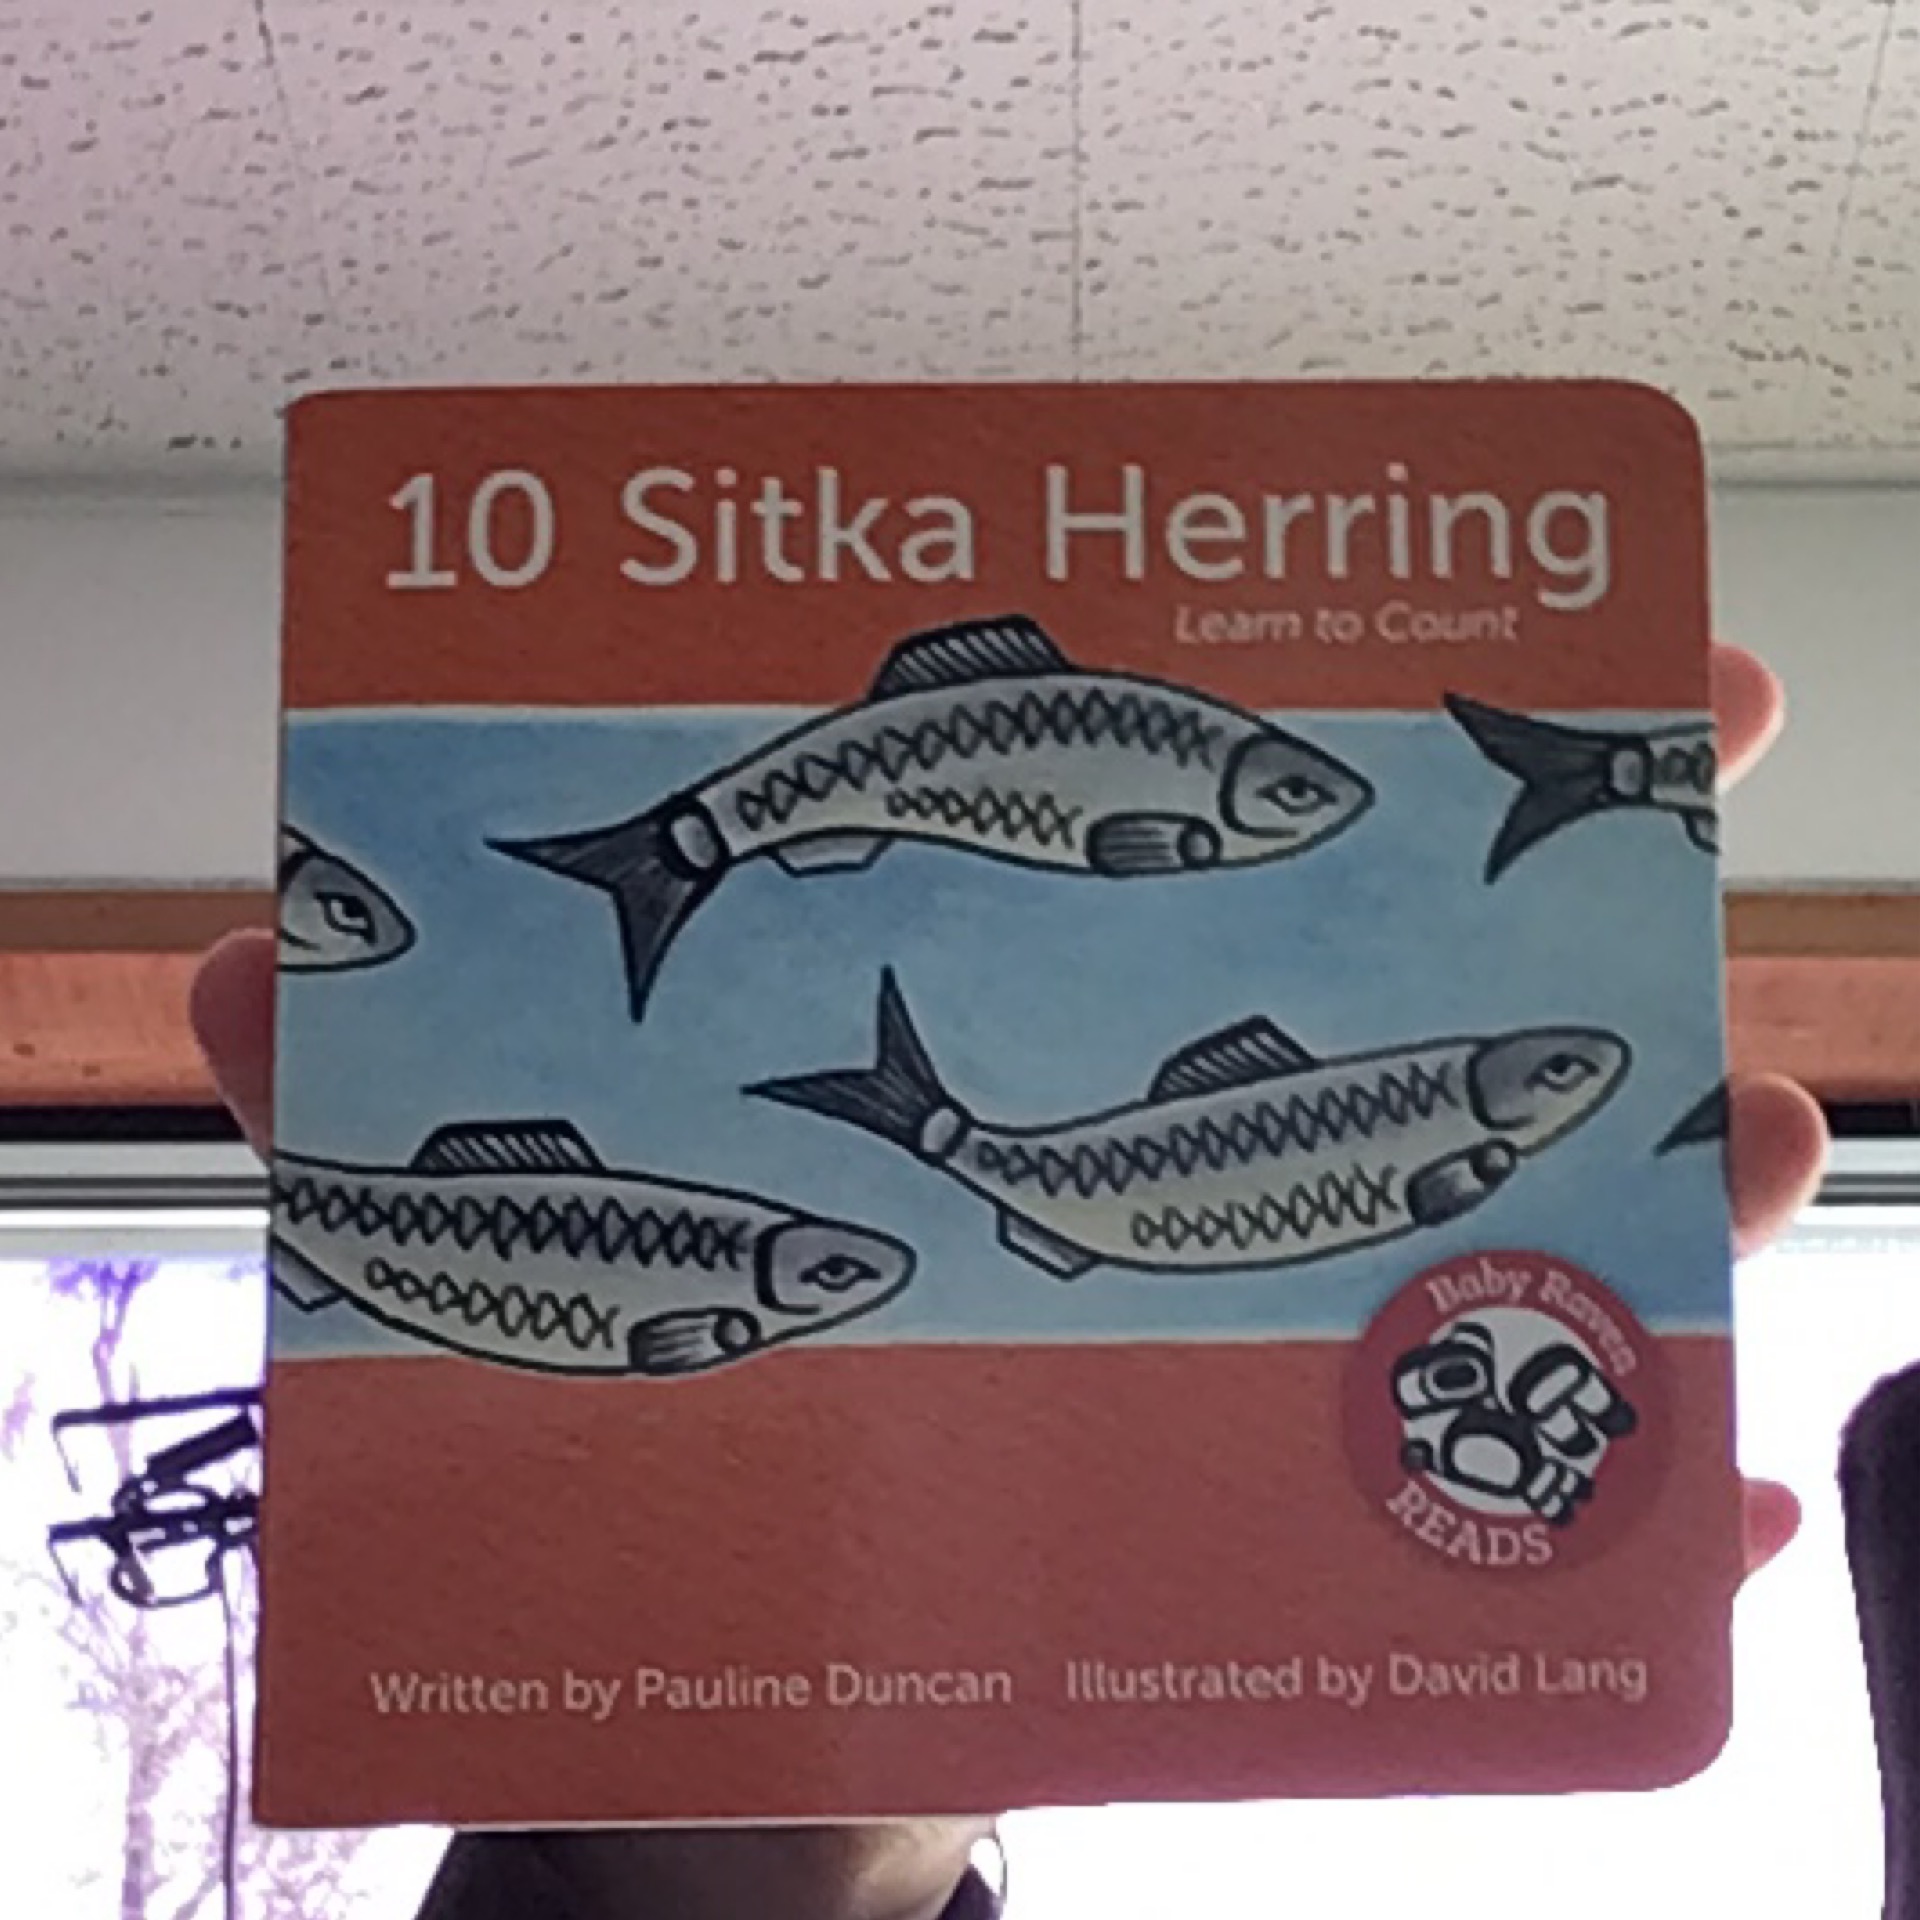 10 Sitka Herring